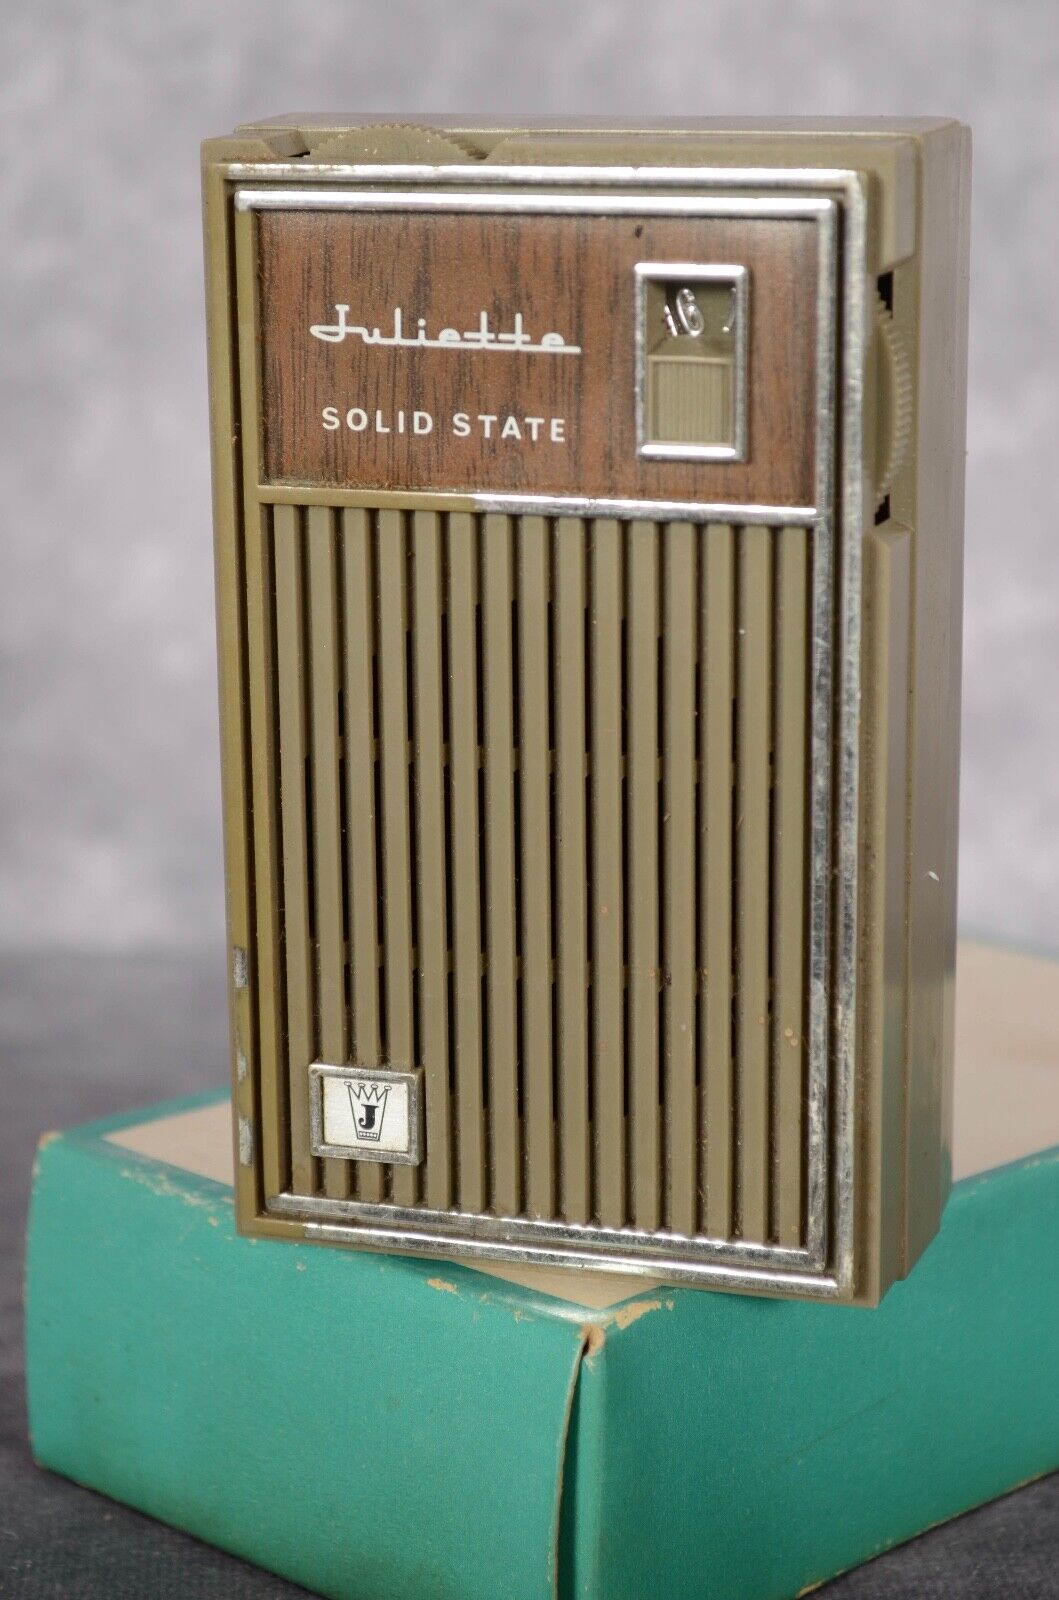 JULIETTE Vintage Model AK-98 Solid State Transistor Pocket AM Radio WORKING